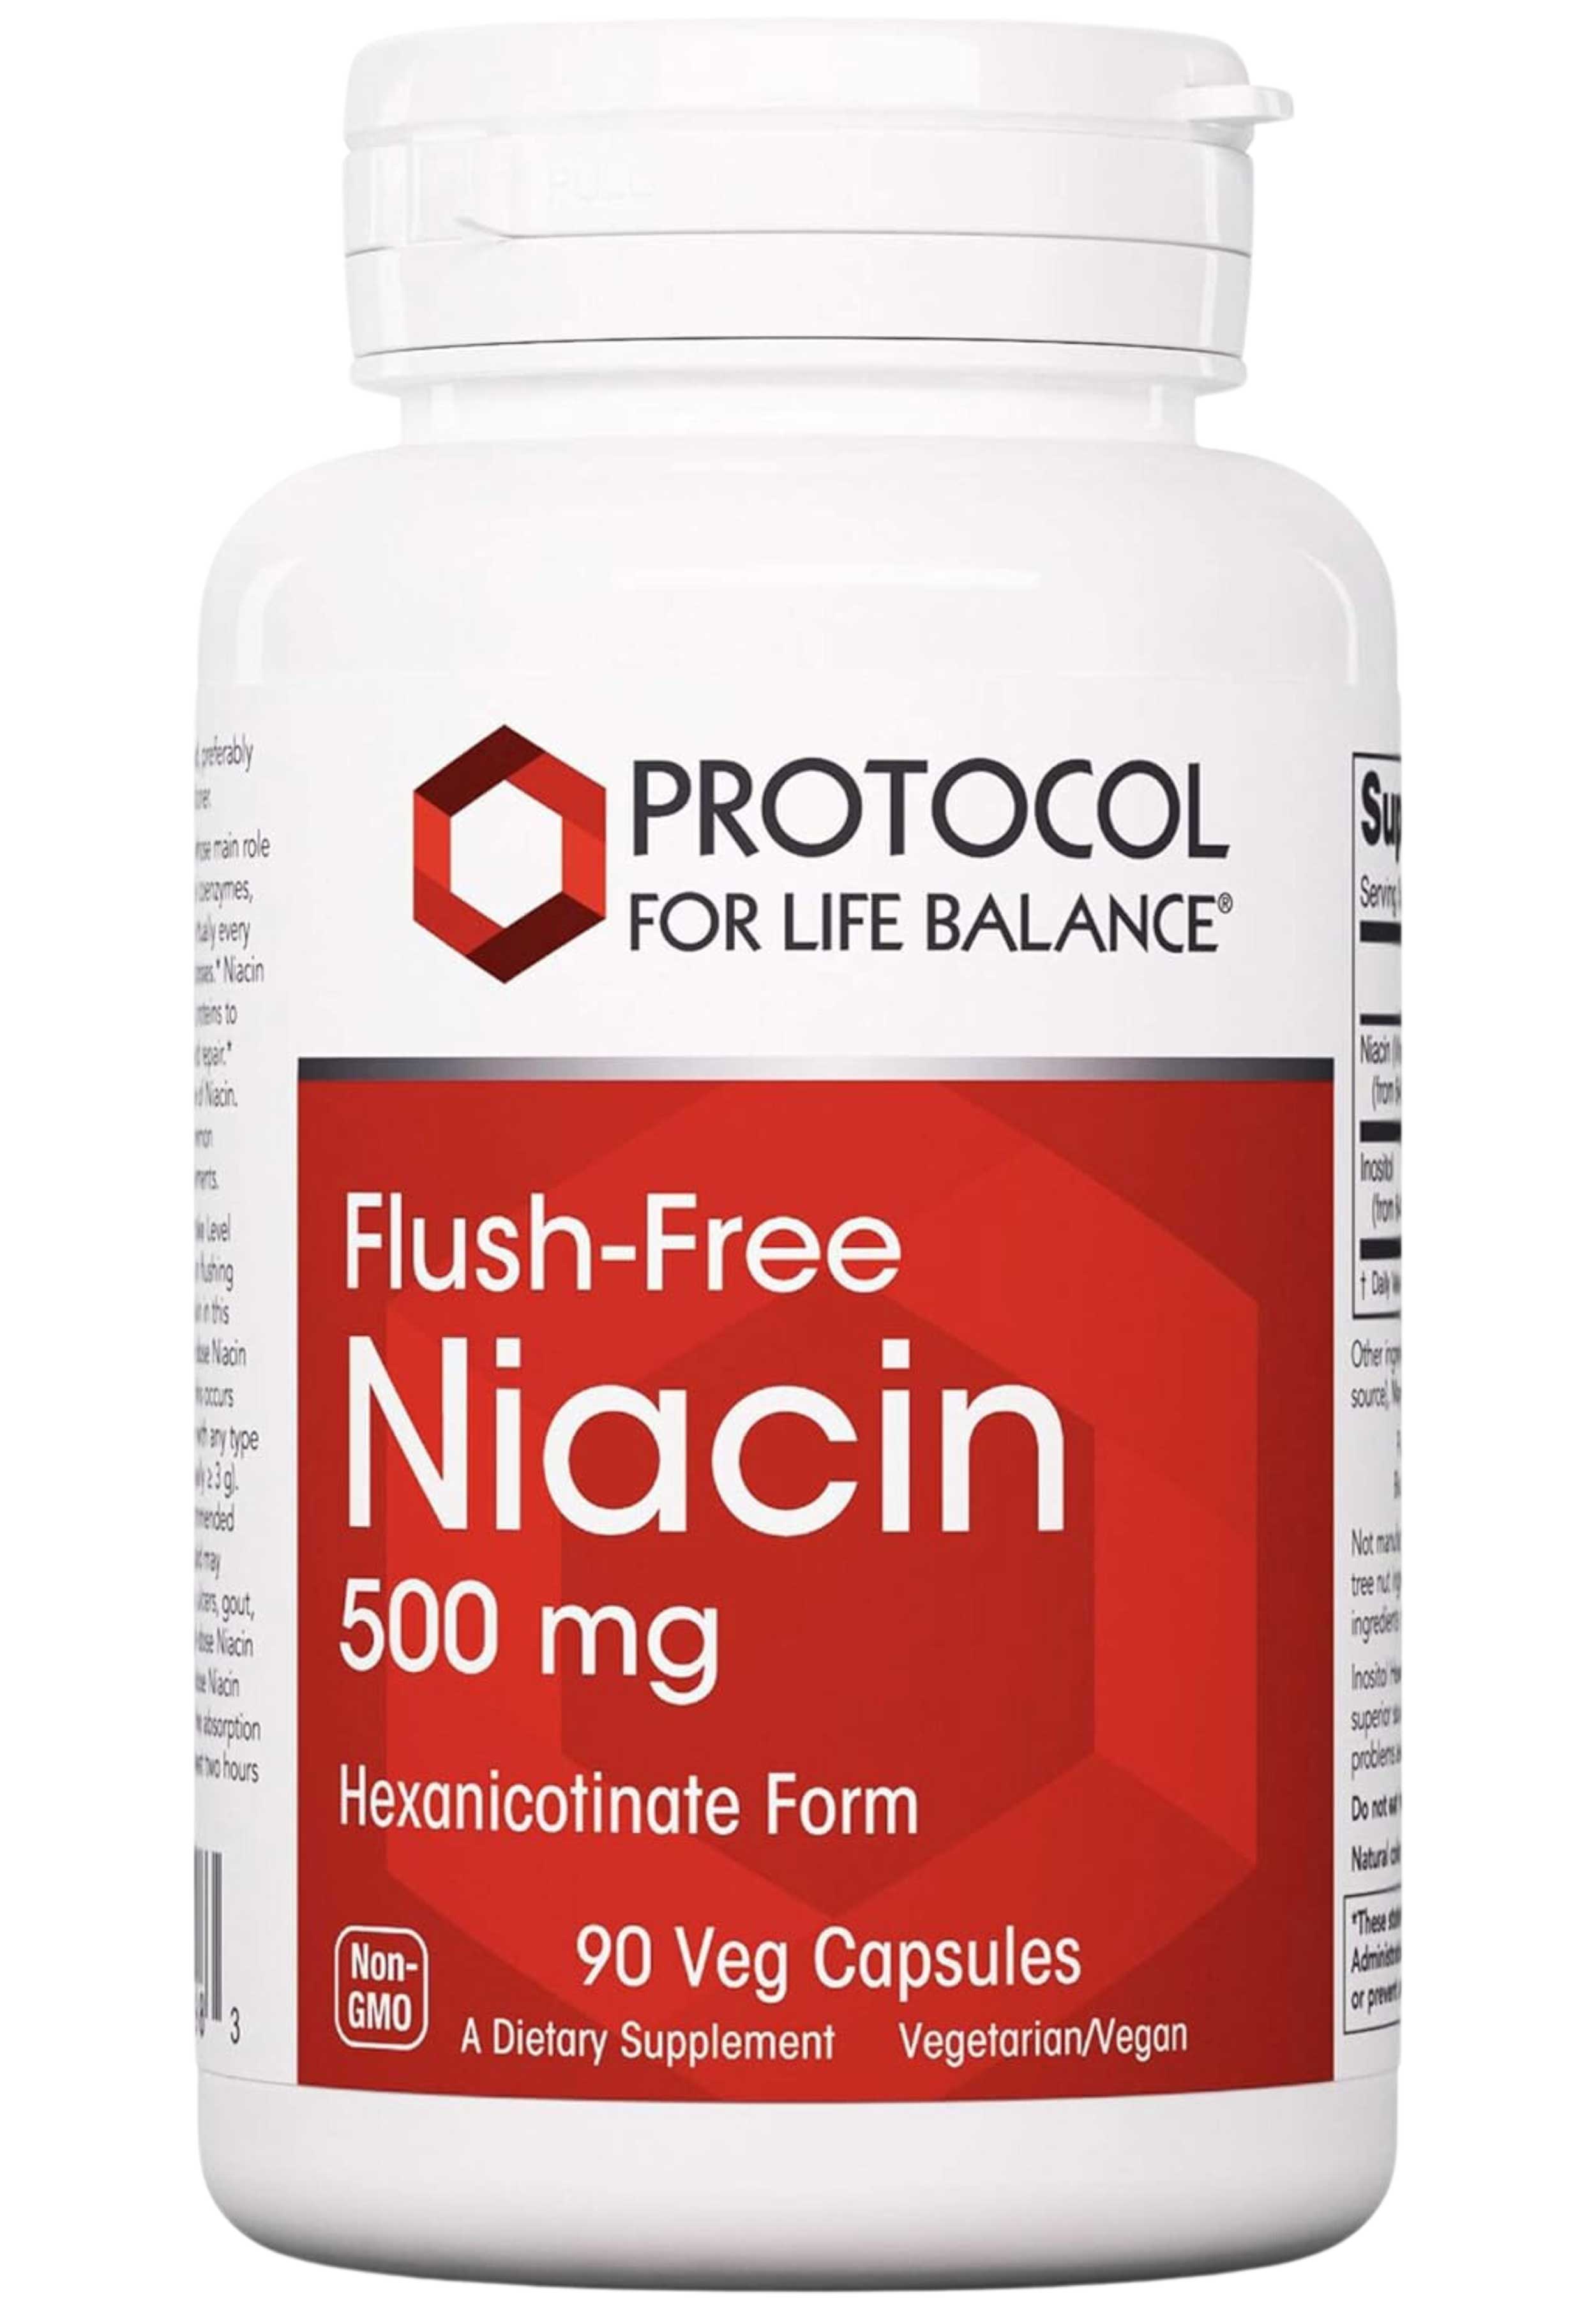 Protocol for Life Balance Flush-Free Niacin 500 mg